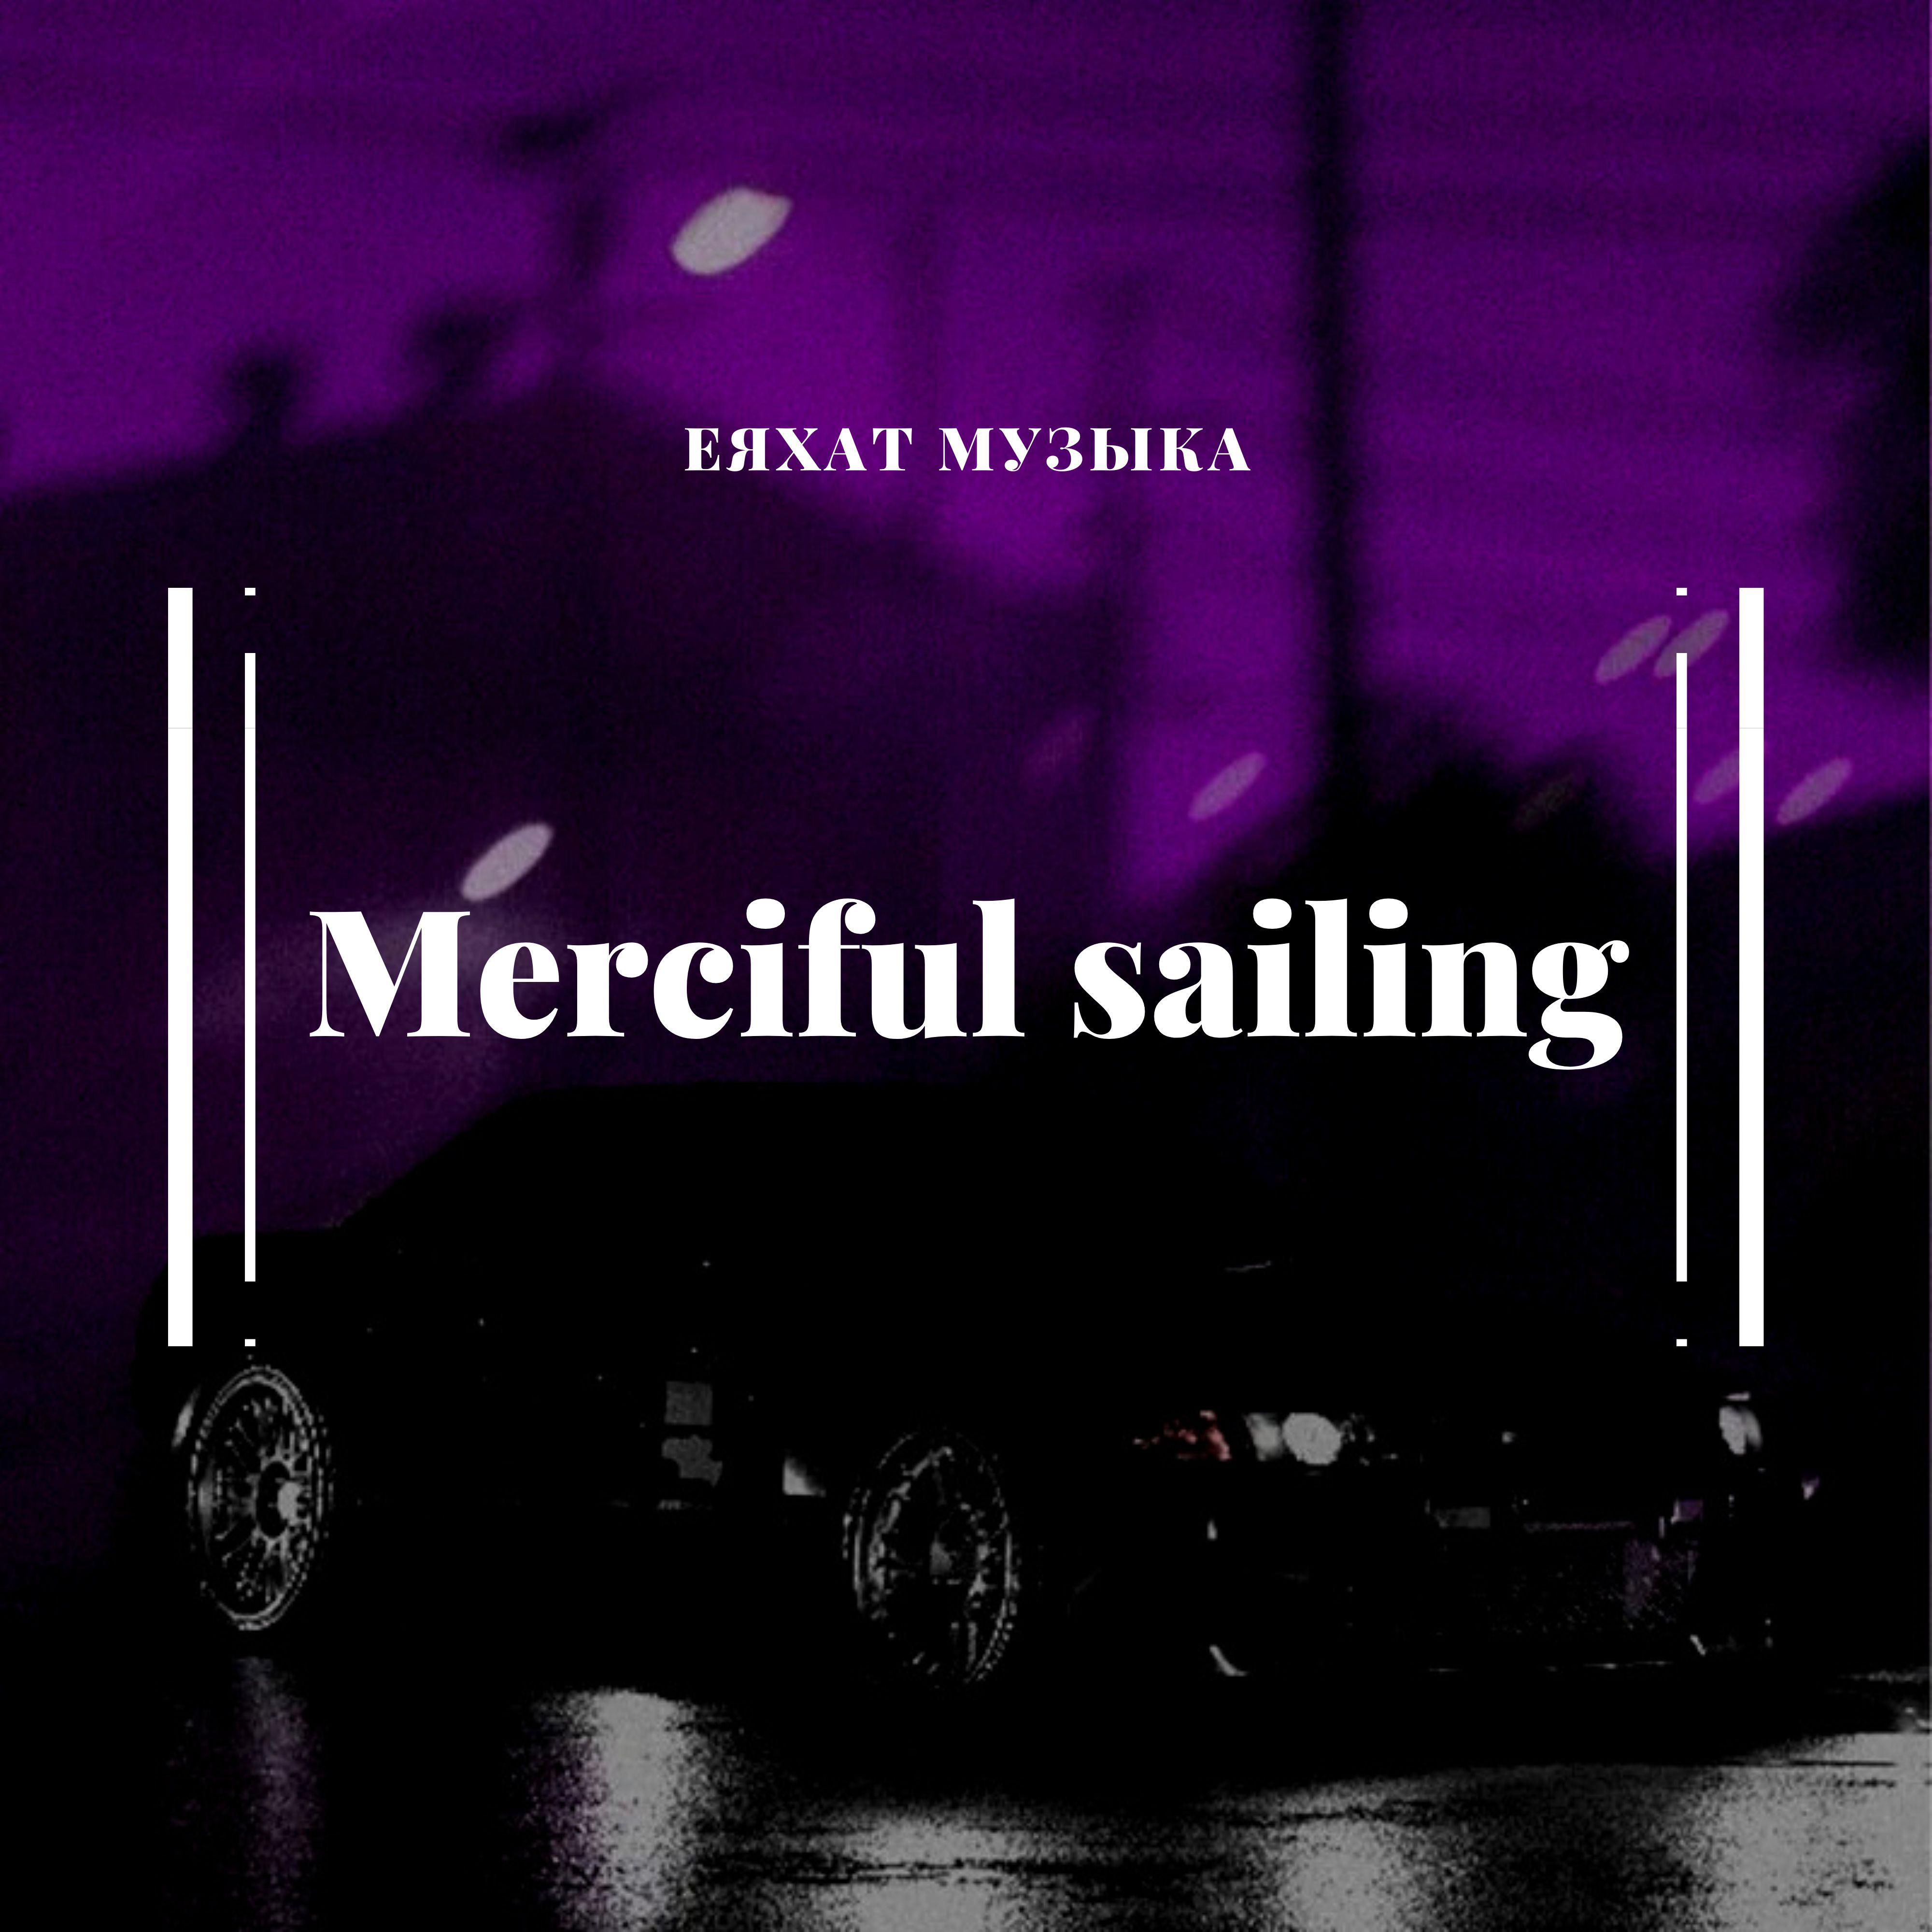 еяхат музыка - Merciful sailing (Original Mix)